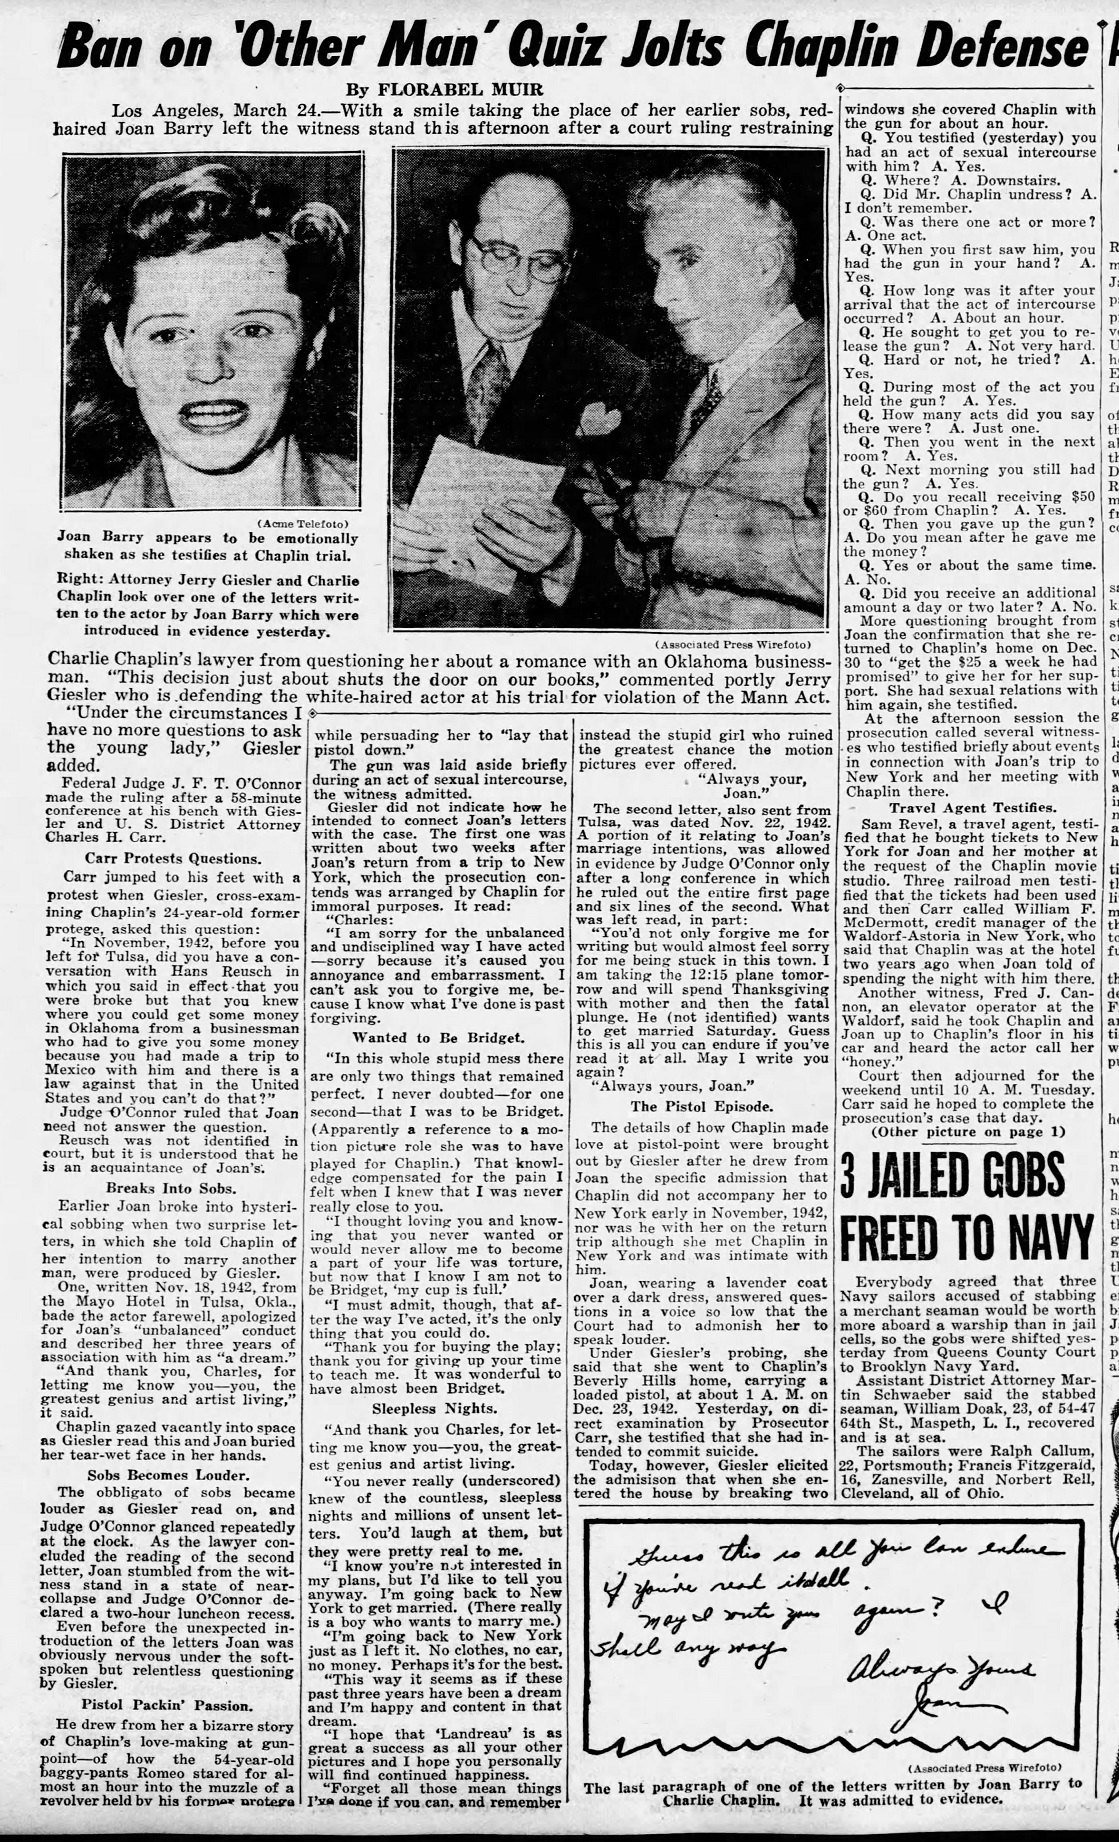 Daily_News_Sat__Mar_25__1944_(1).jpg